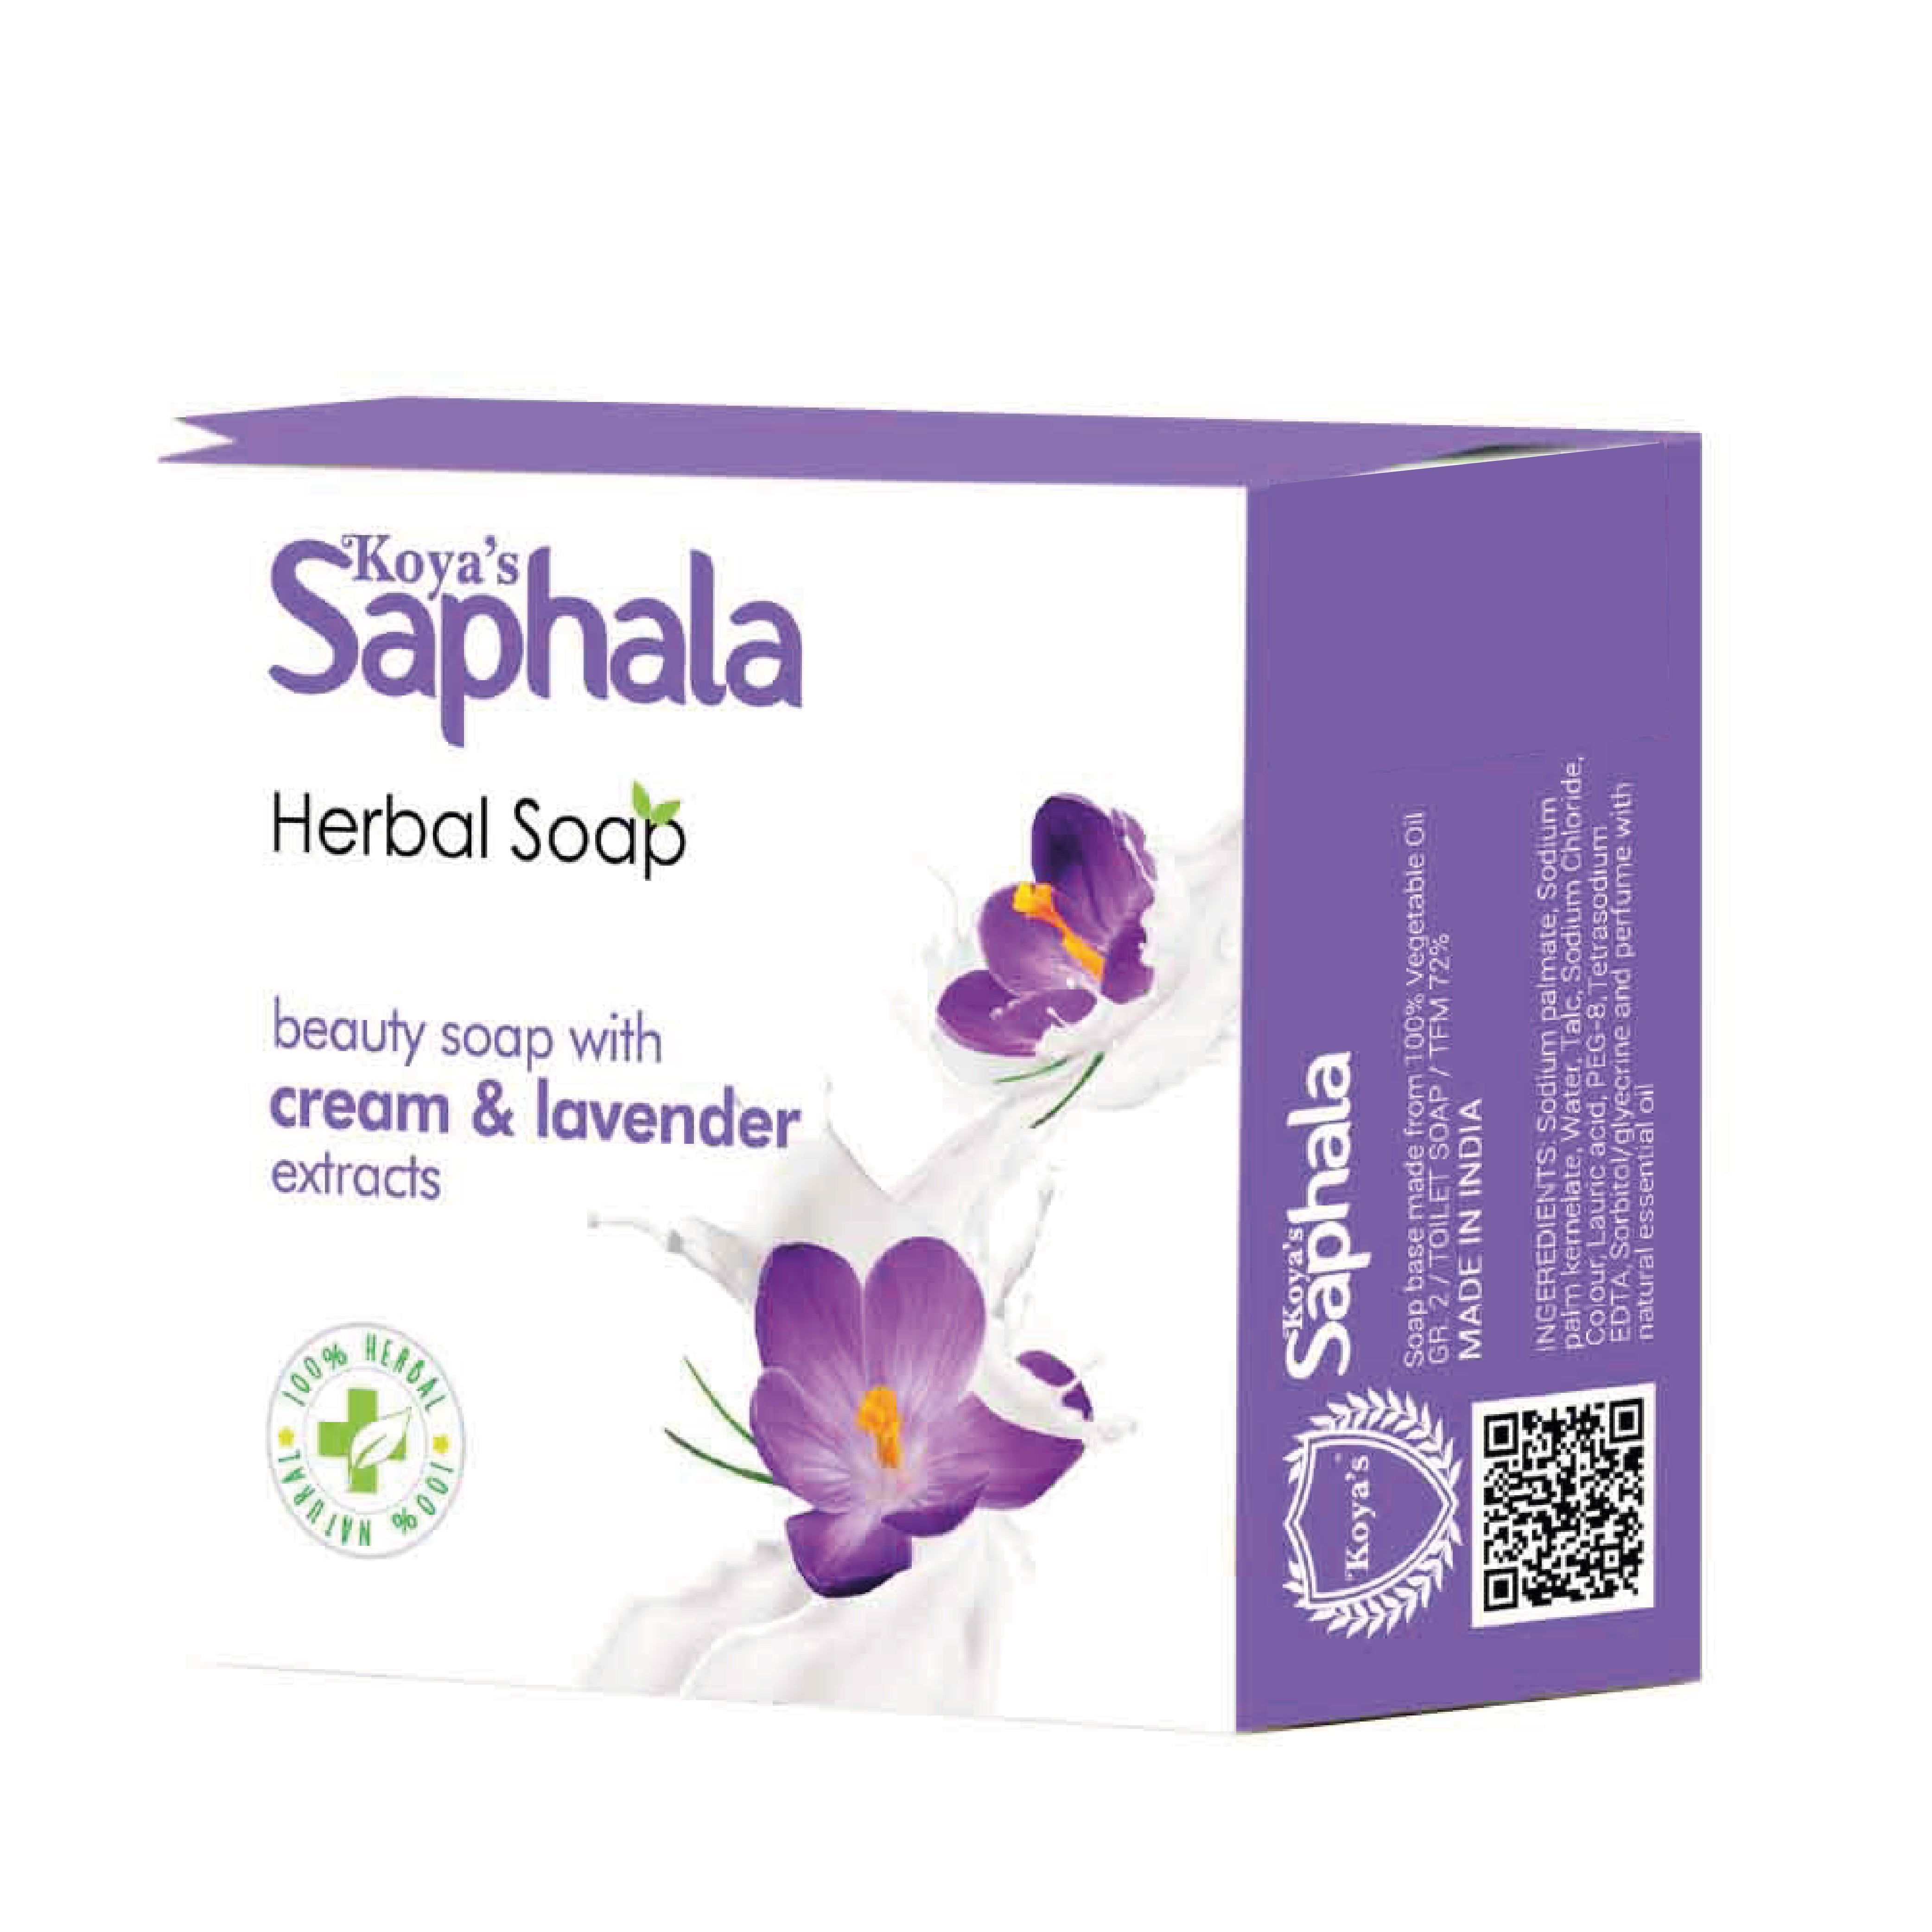 Koyas Saphala Herbal Soap Cream & Lavender